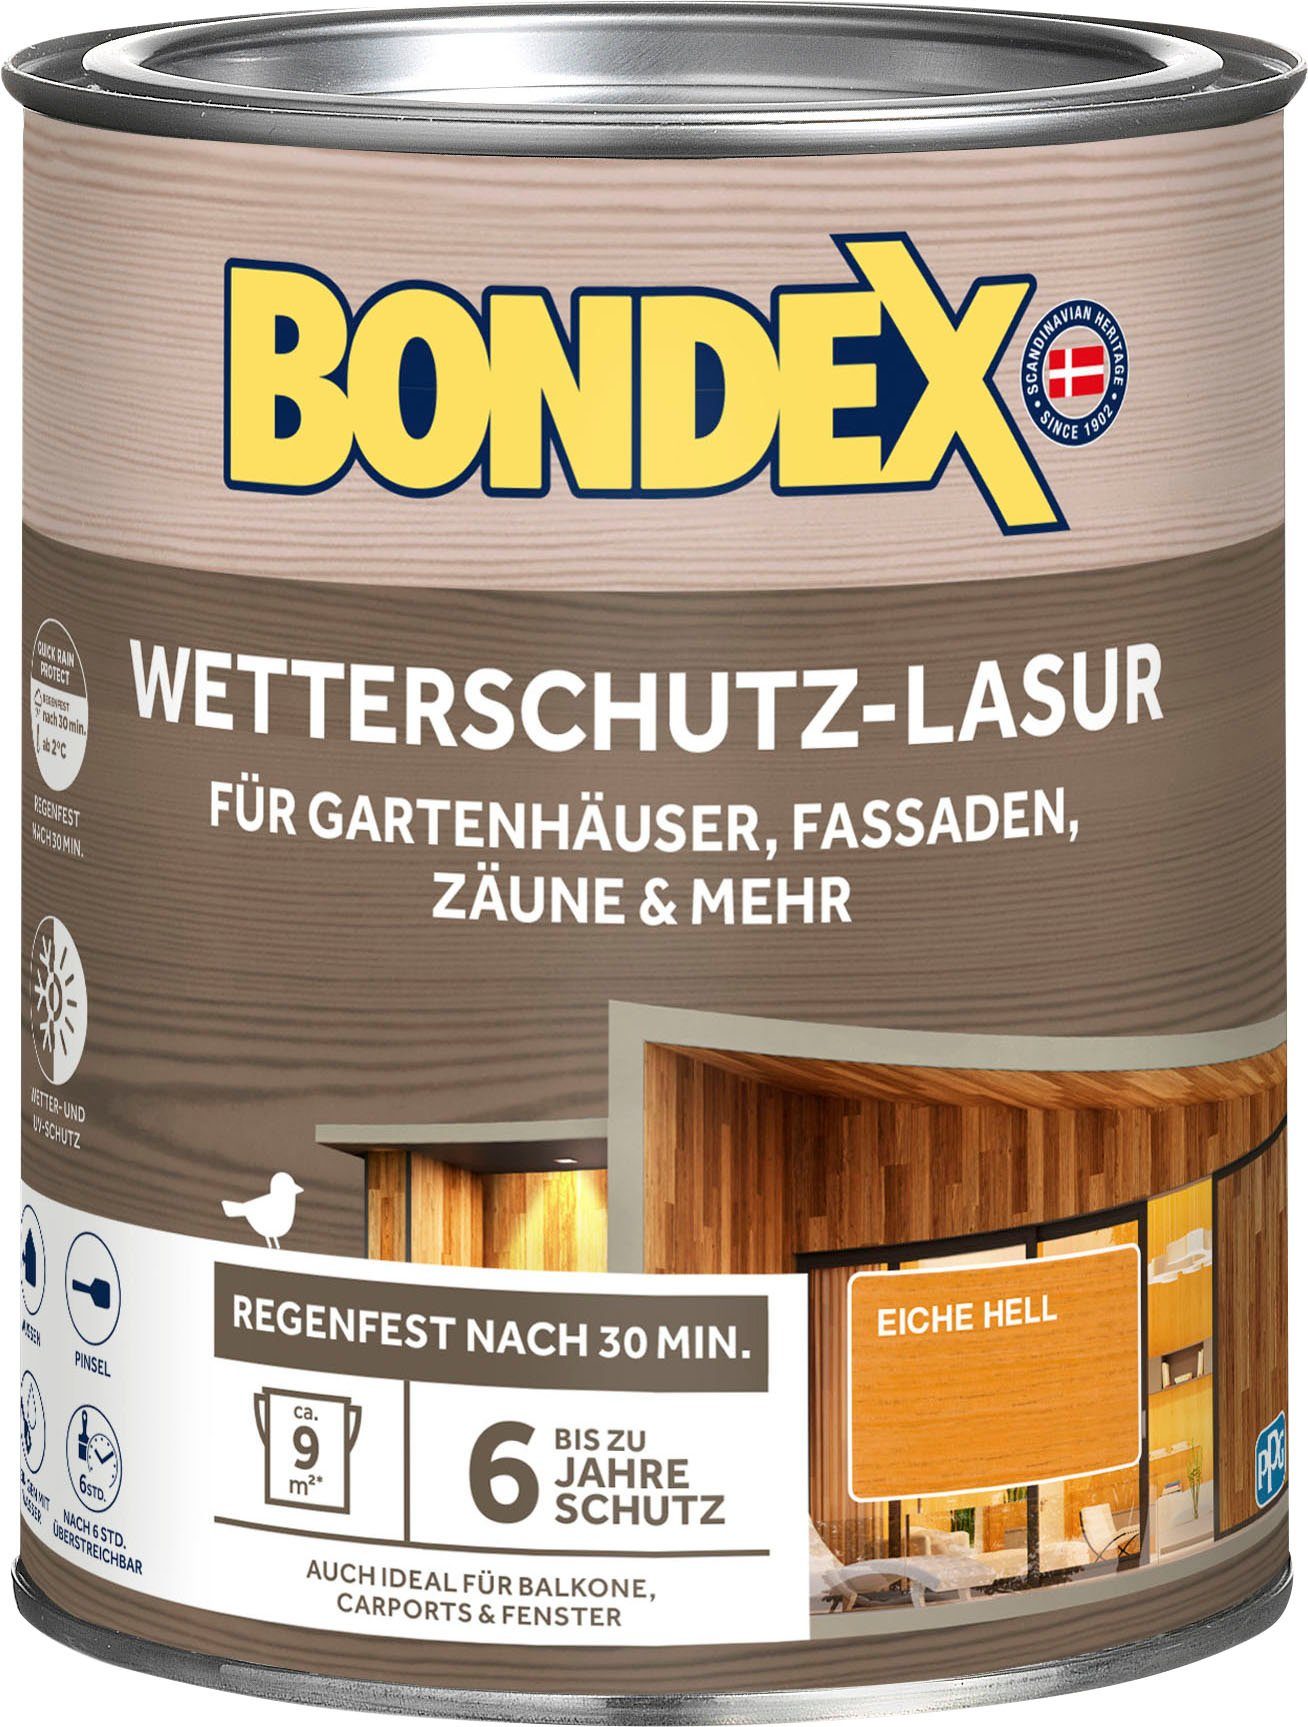 Bondex Online-Shop | OTTO